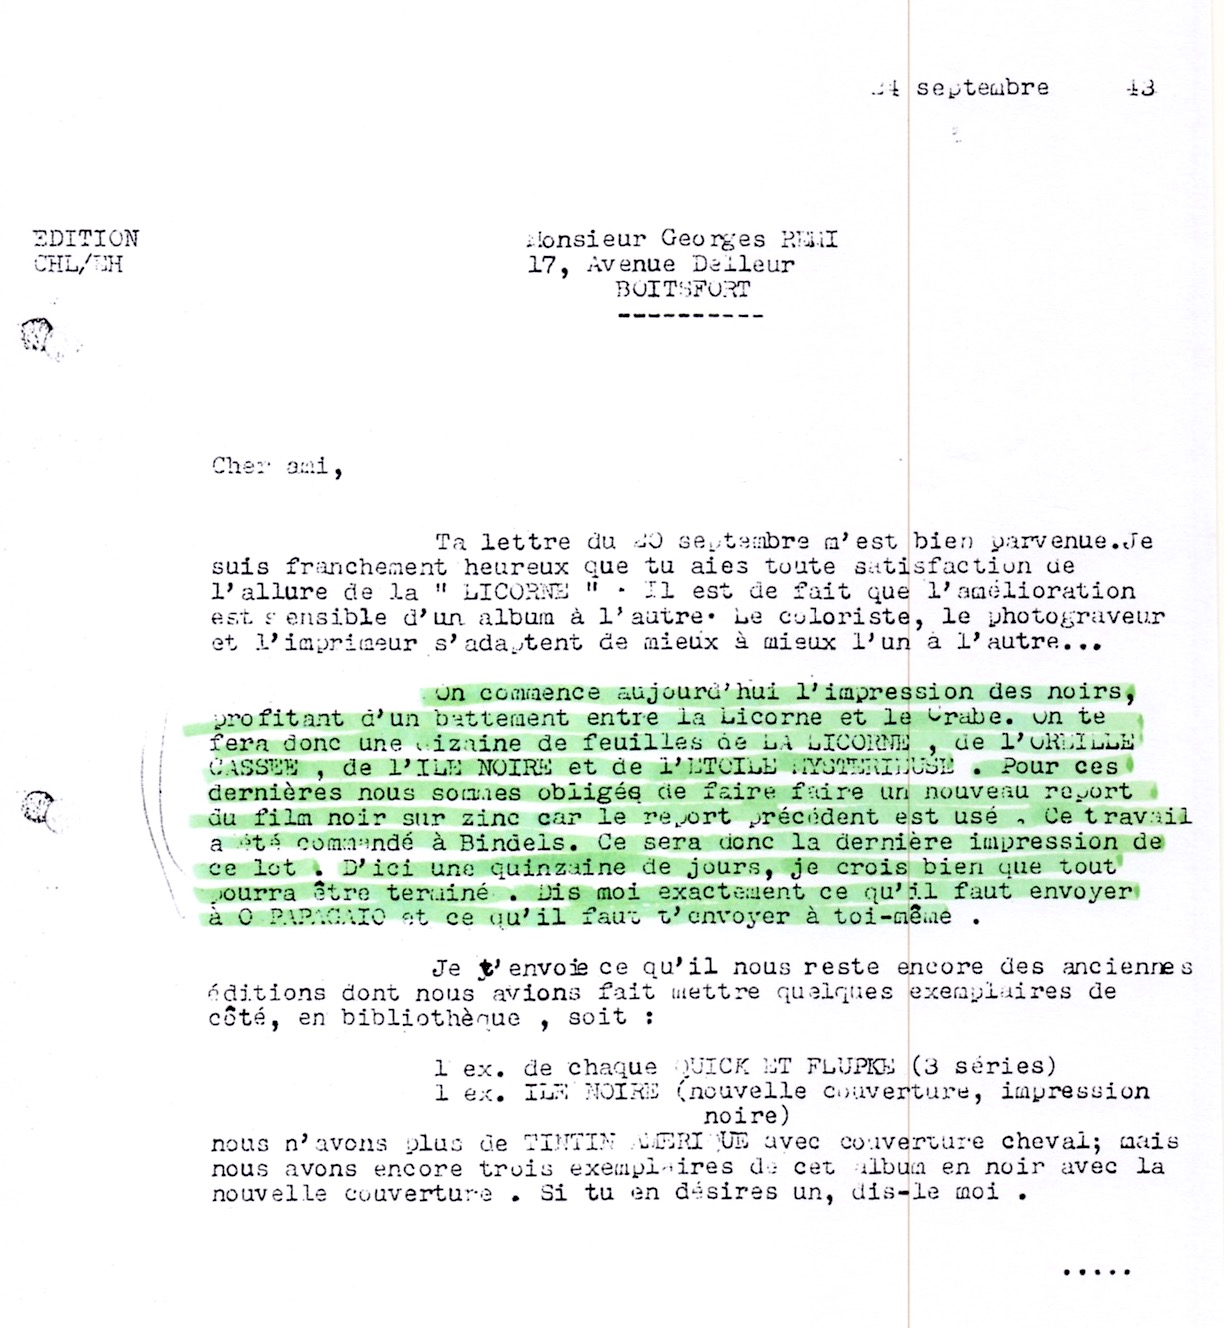 Le 24 septembre 1943, Lesne indique à Hergé que pour « L’Étoile mystérieuse », il faut refaire les plaques d’impression.